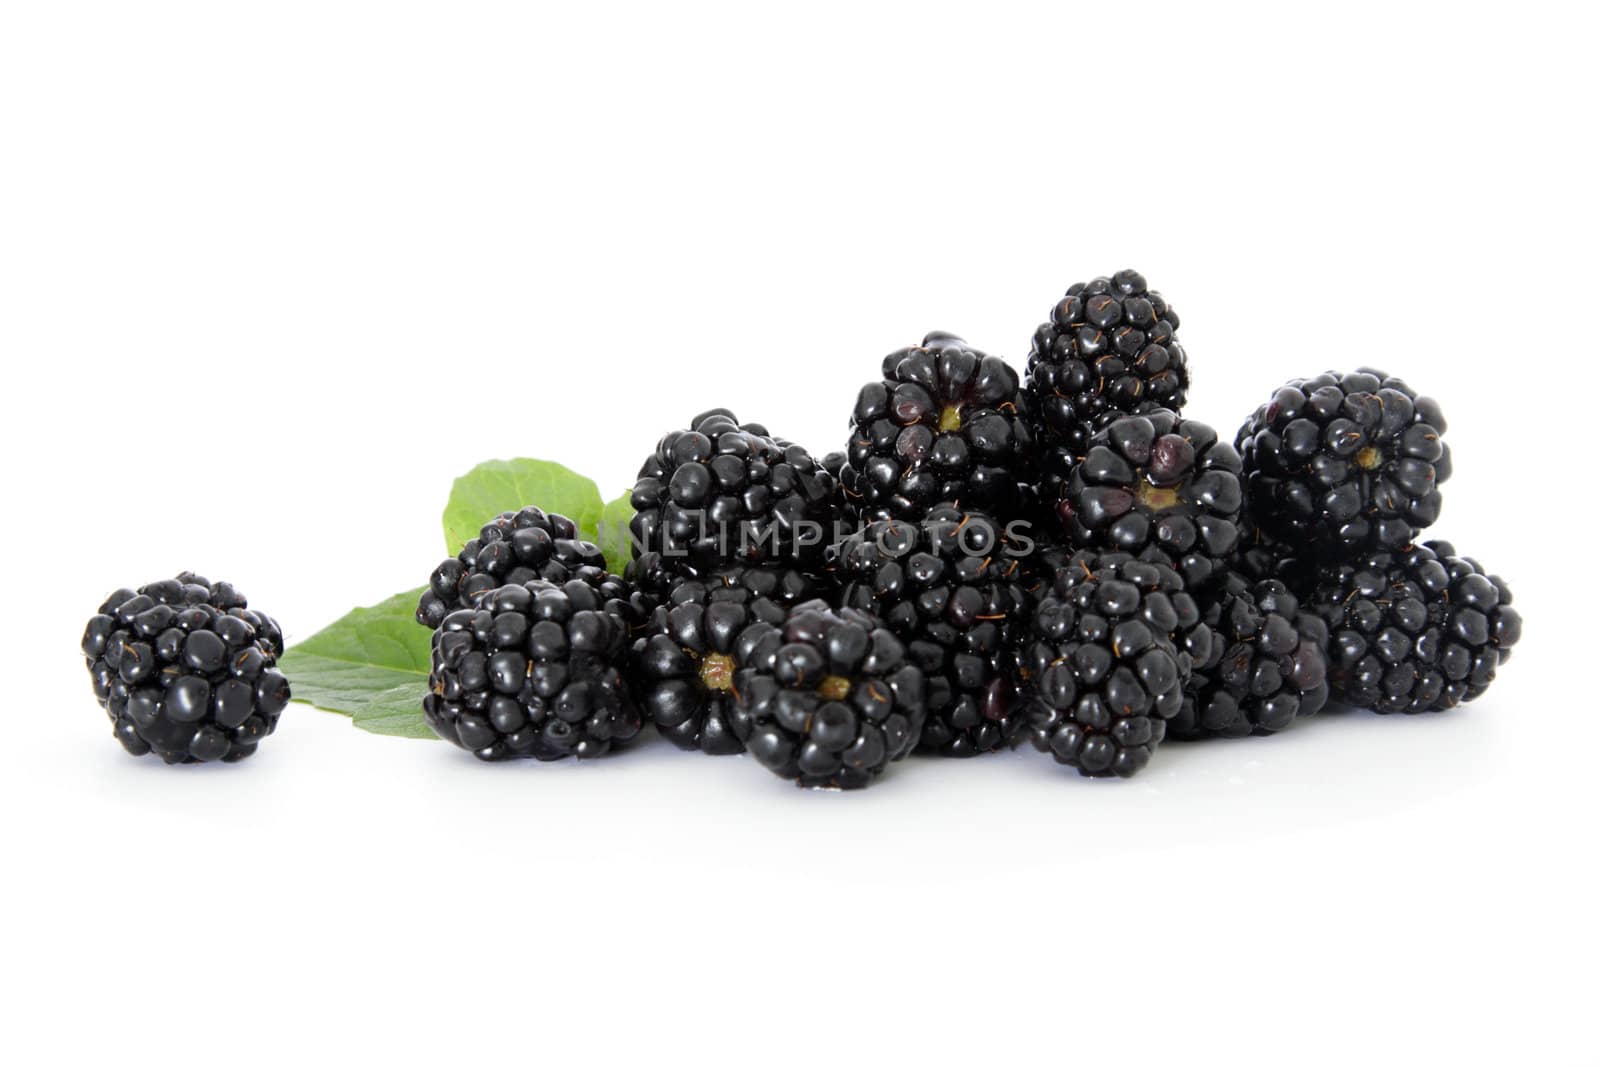 Blackberries on white background.